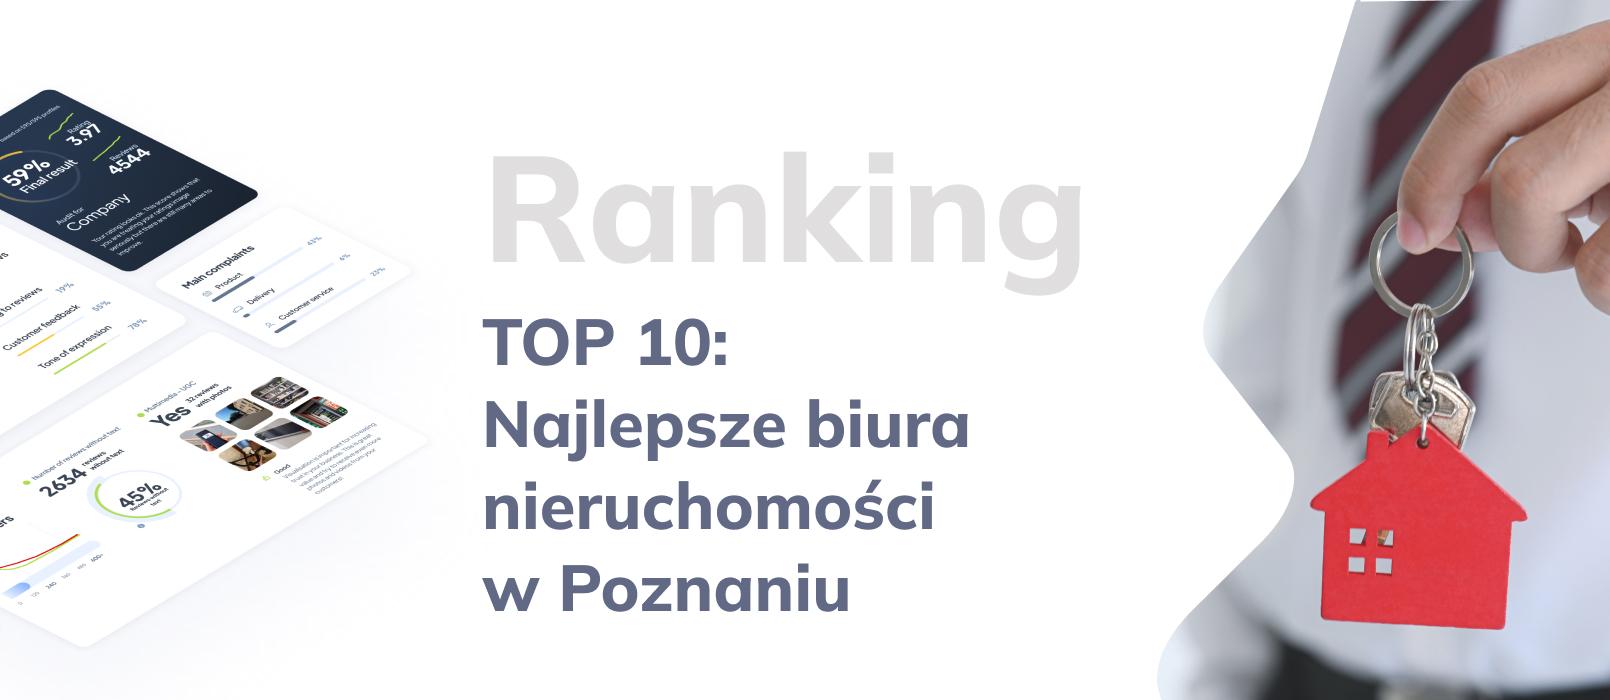 Ranking najlepszych biur nieruchomości w Poznaniu - TOP 10